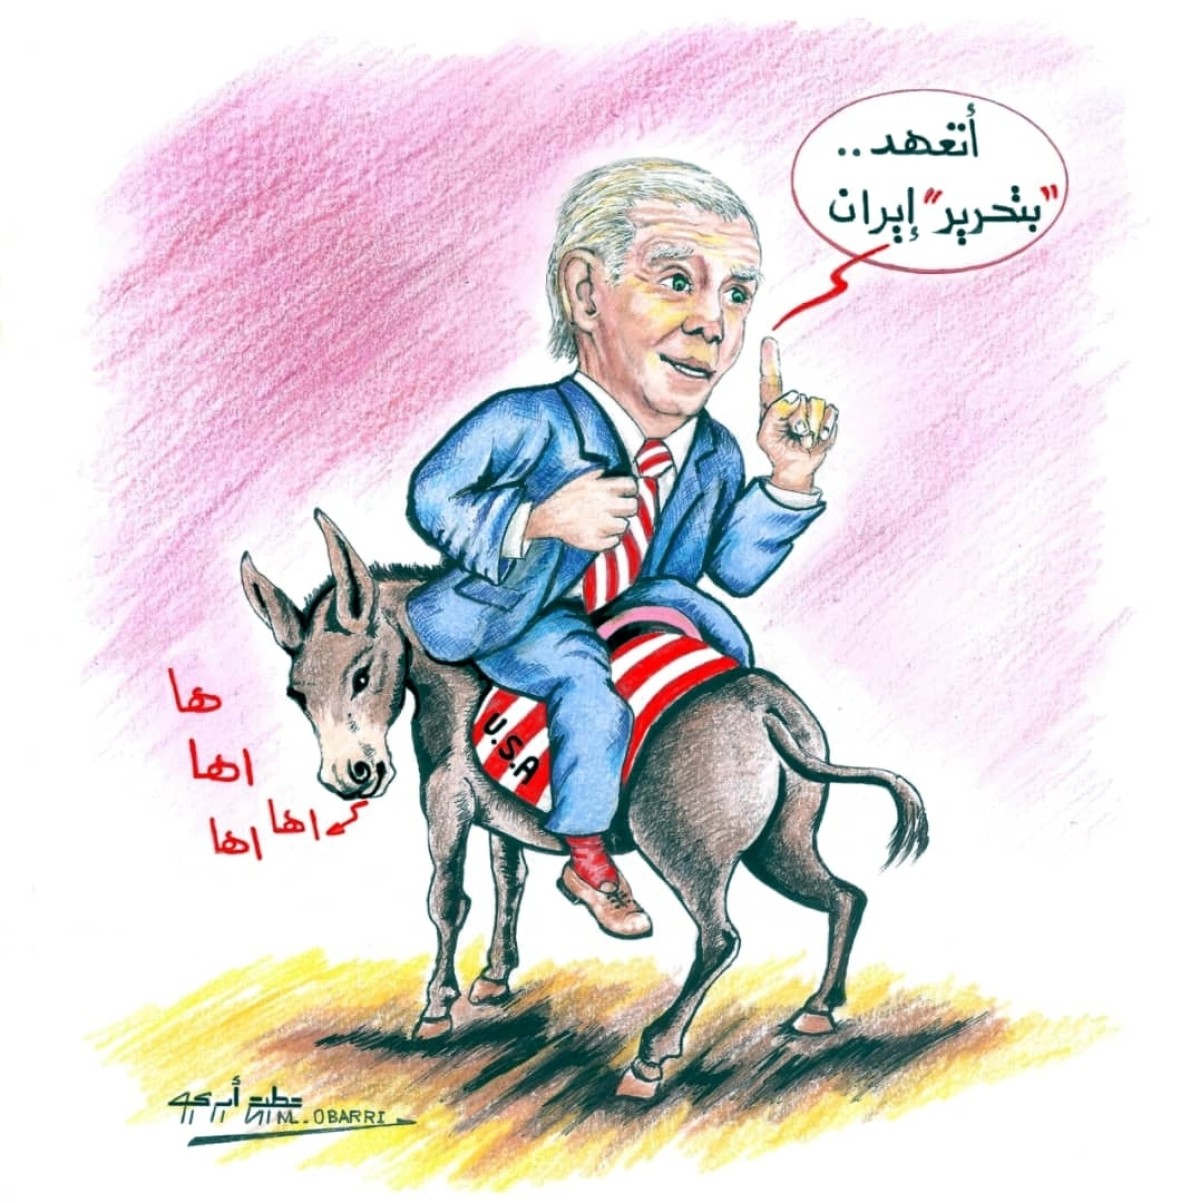 كاريكاتير / أتعهد بتحرير إيران